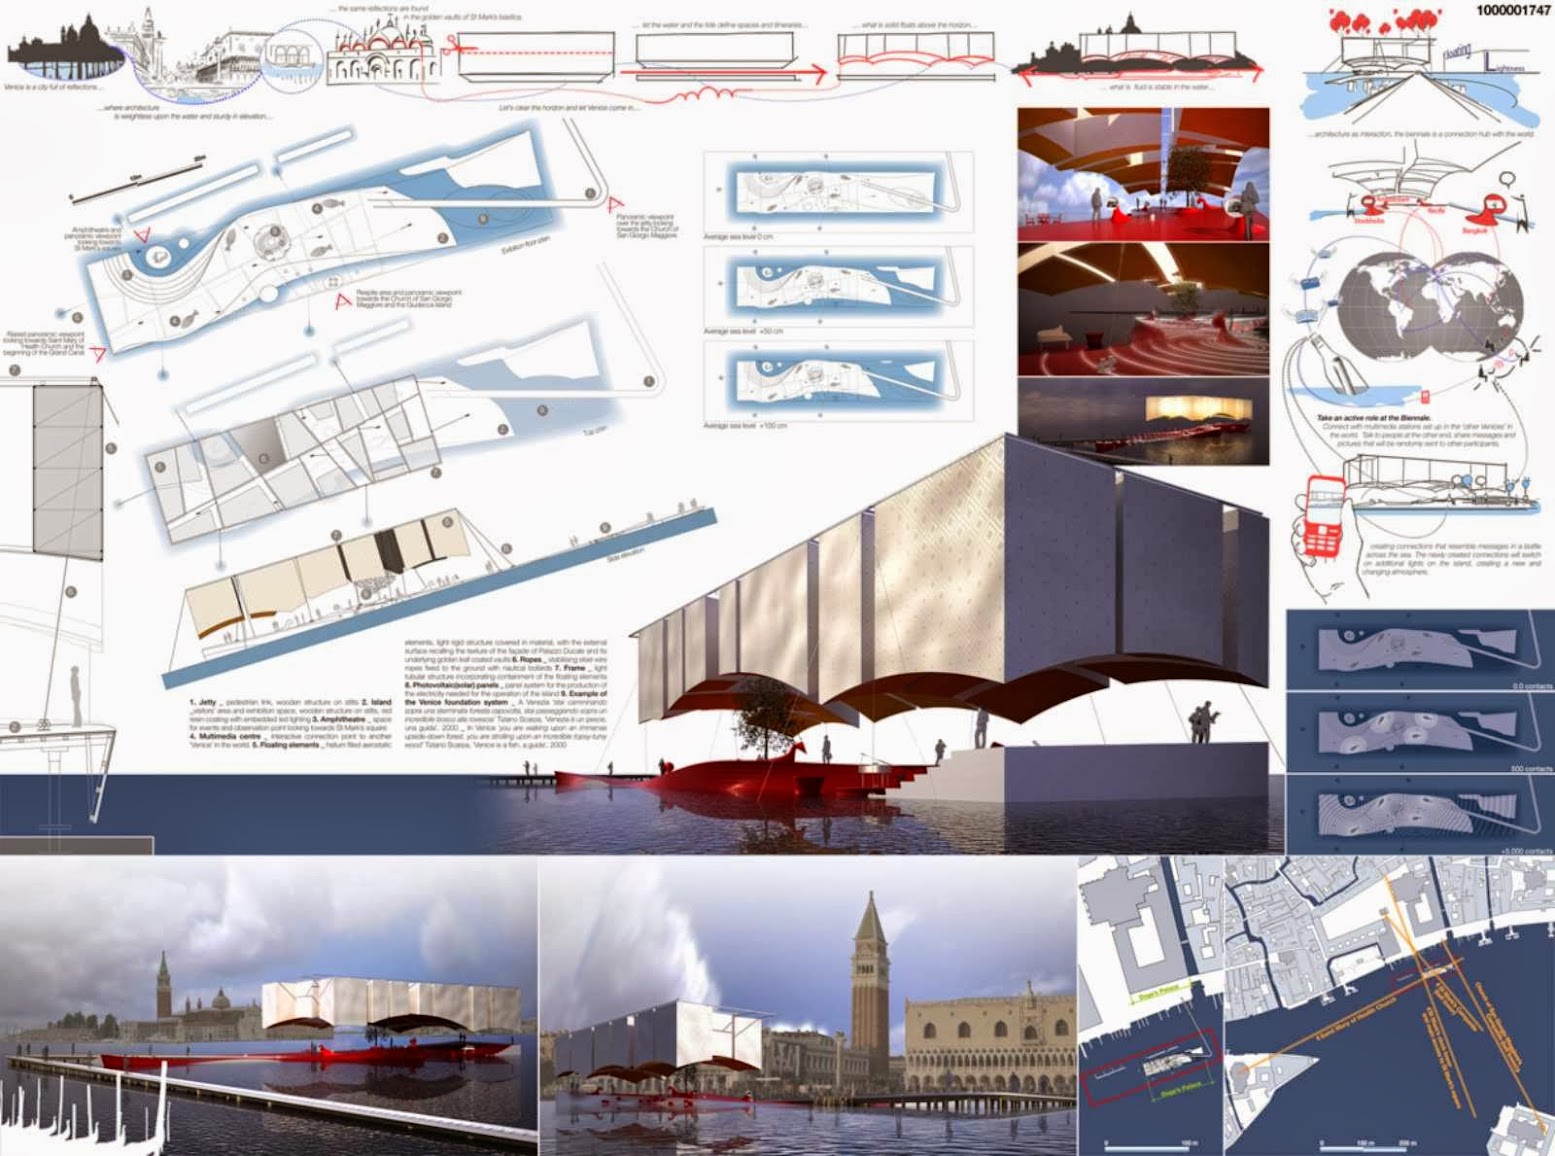 ArchTriumph Venice Biennale Pavilion 2013 Competition Winners